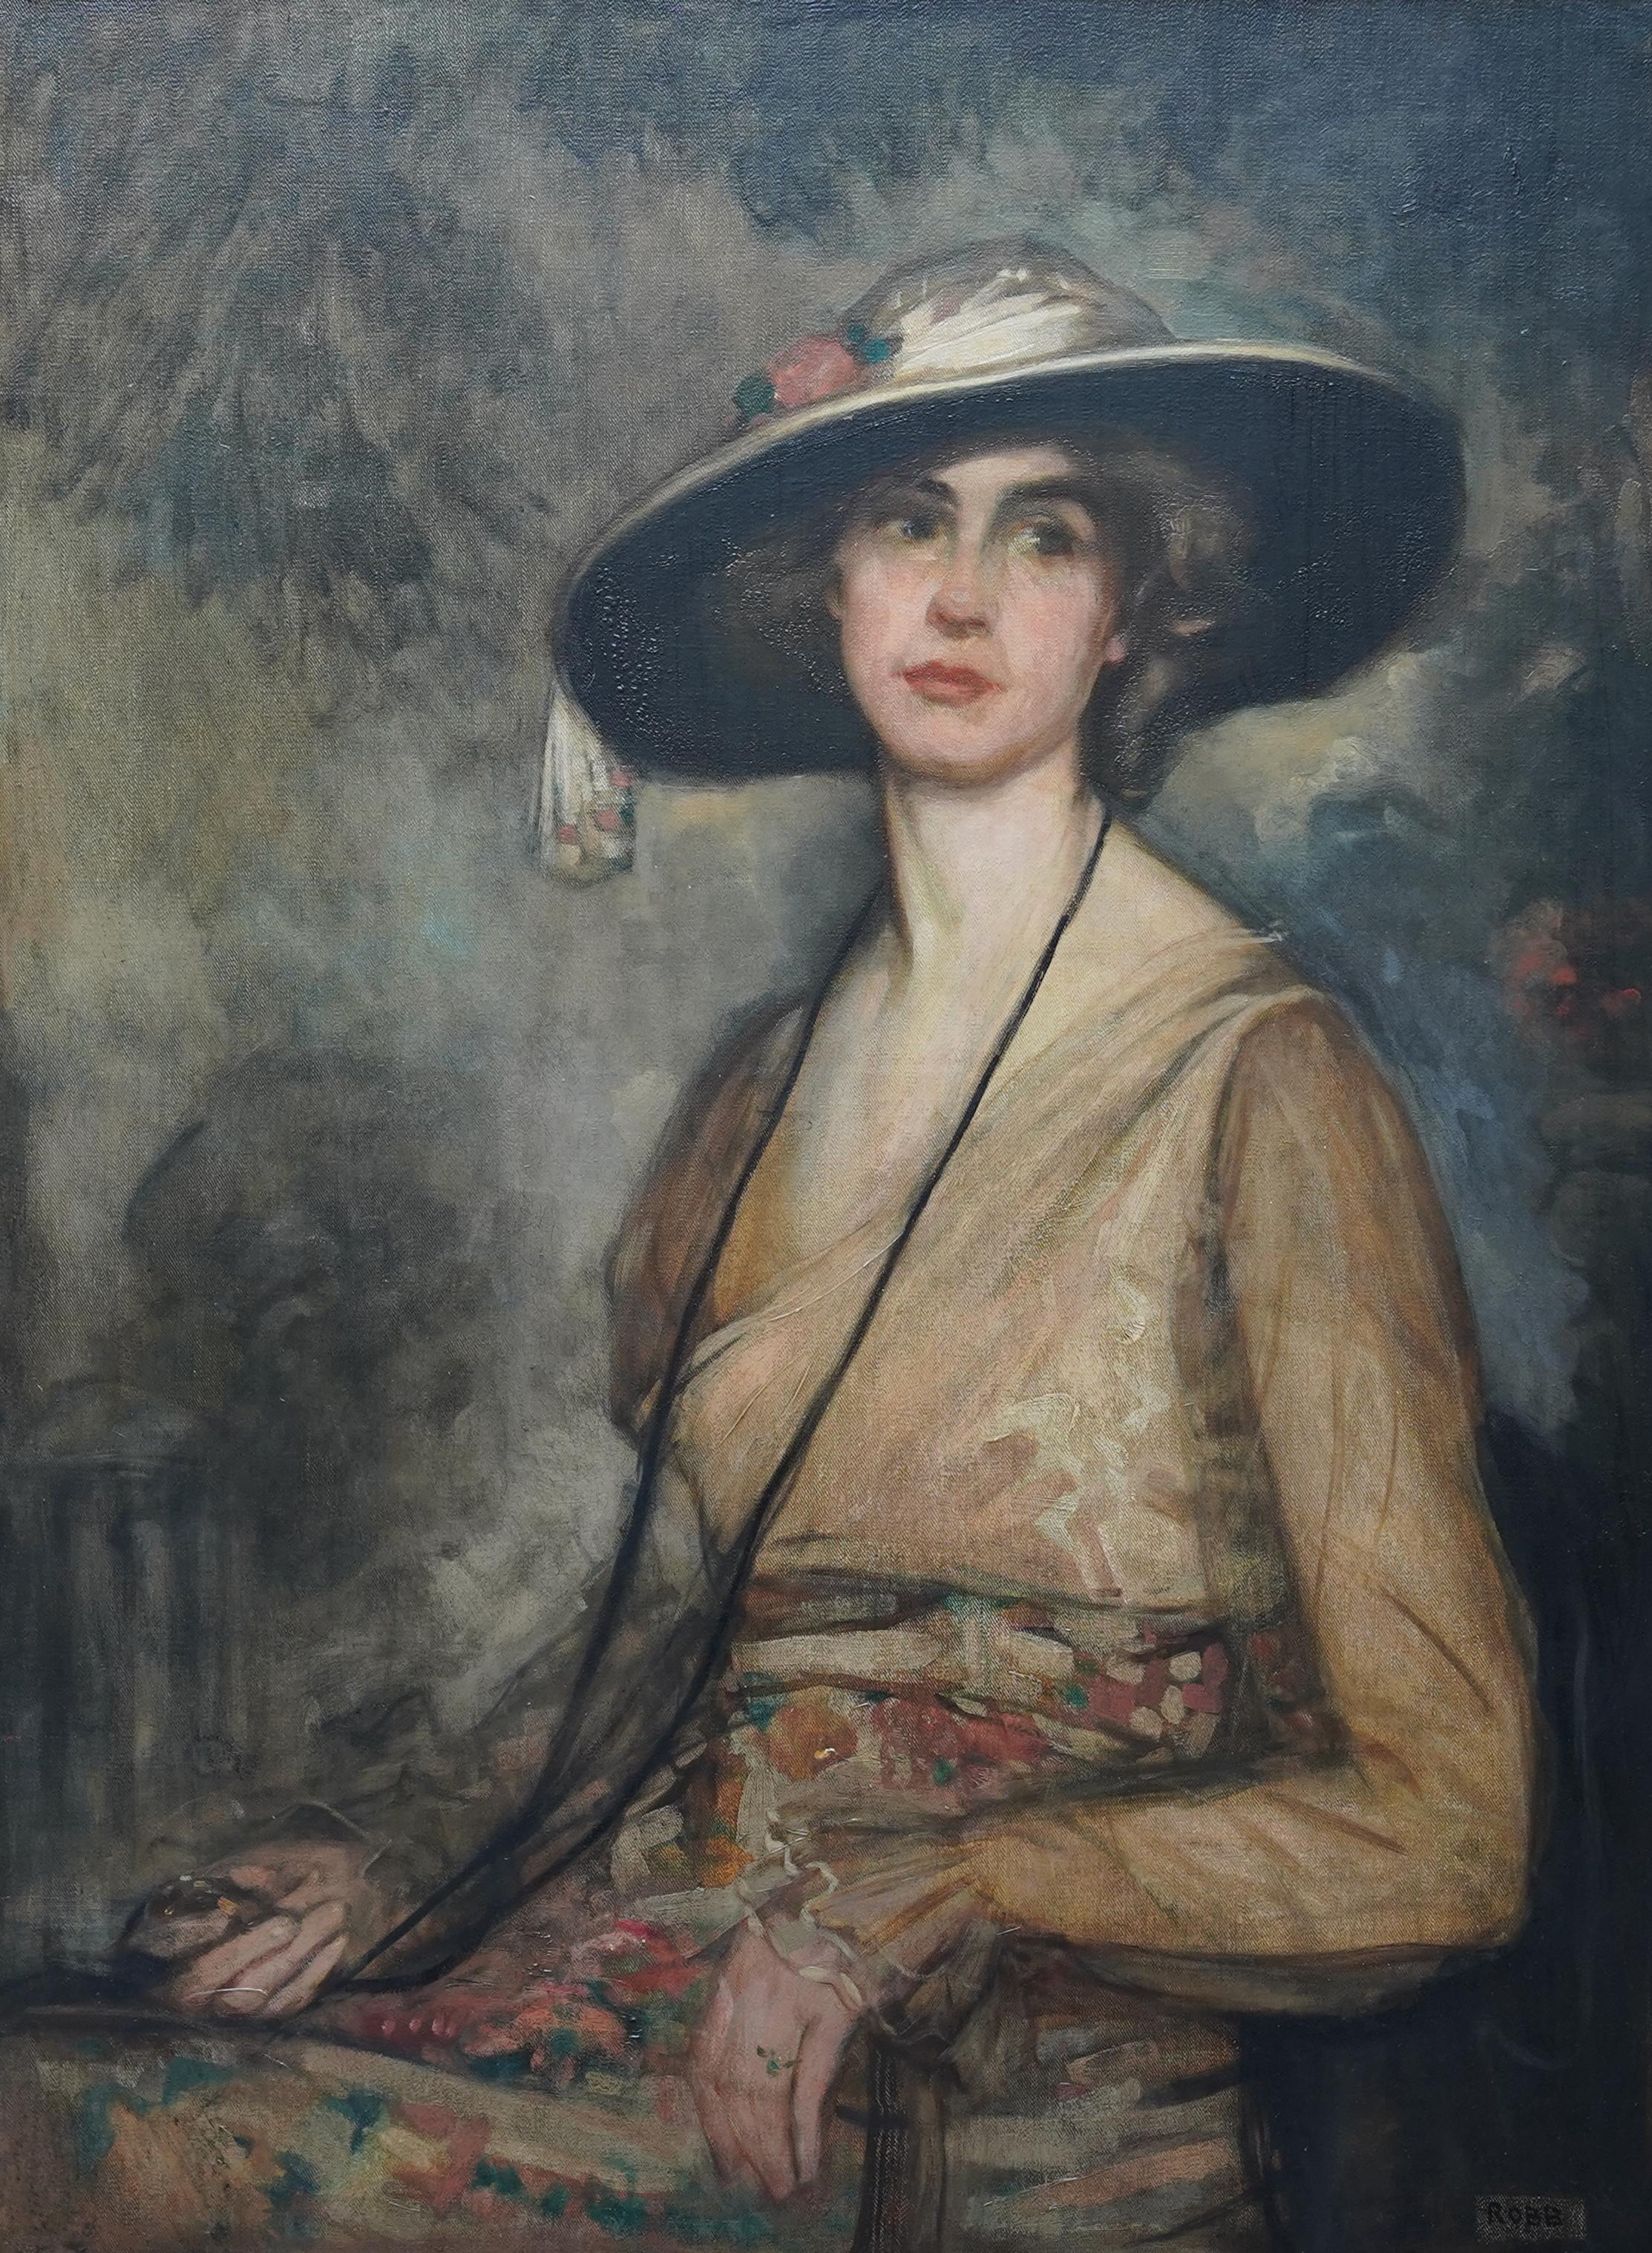 Porträt von Louisa Ann Inglis 1857-1935 – britisches viktorianisches Ölgemälde – Painting von William George Robb